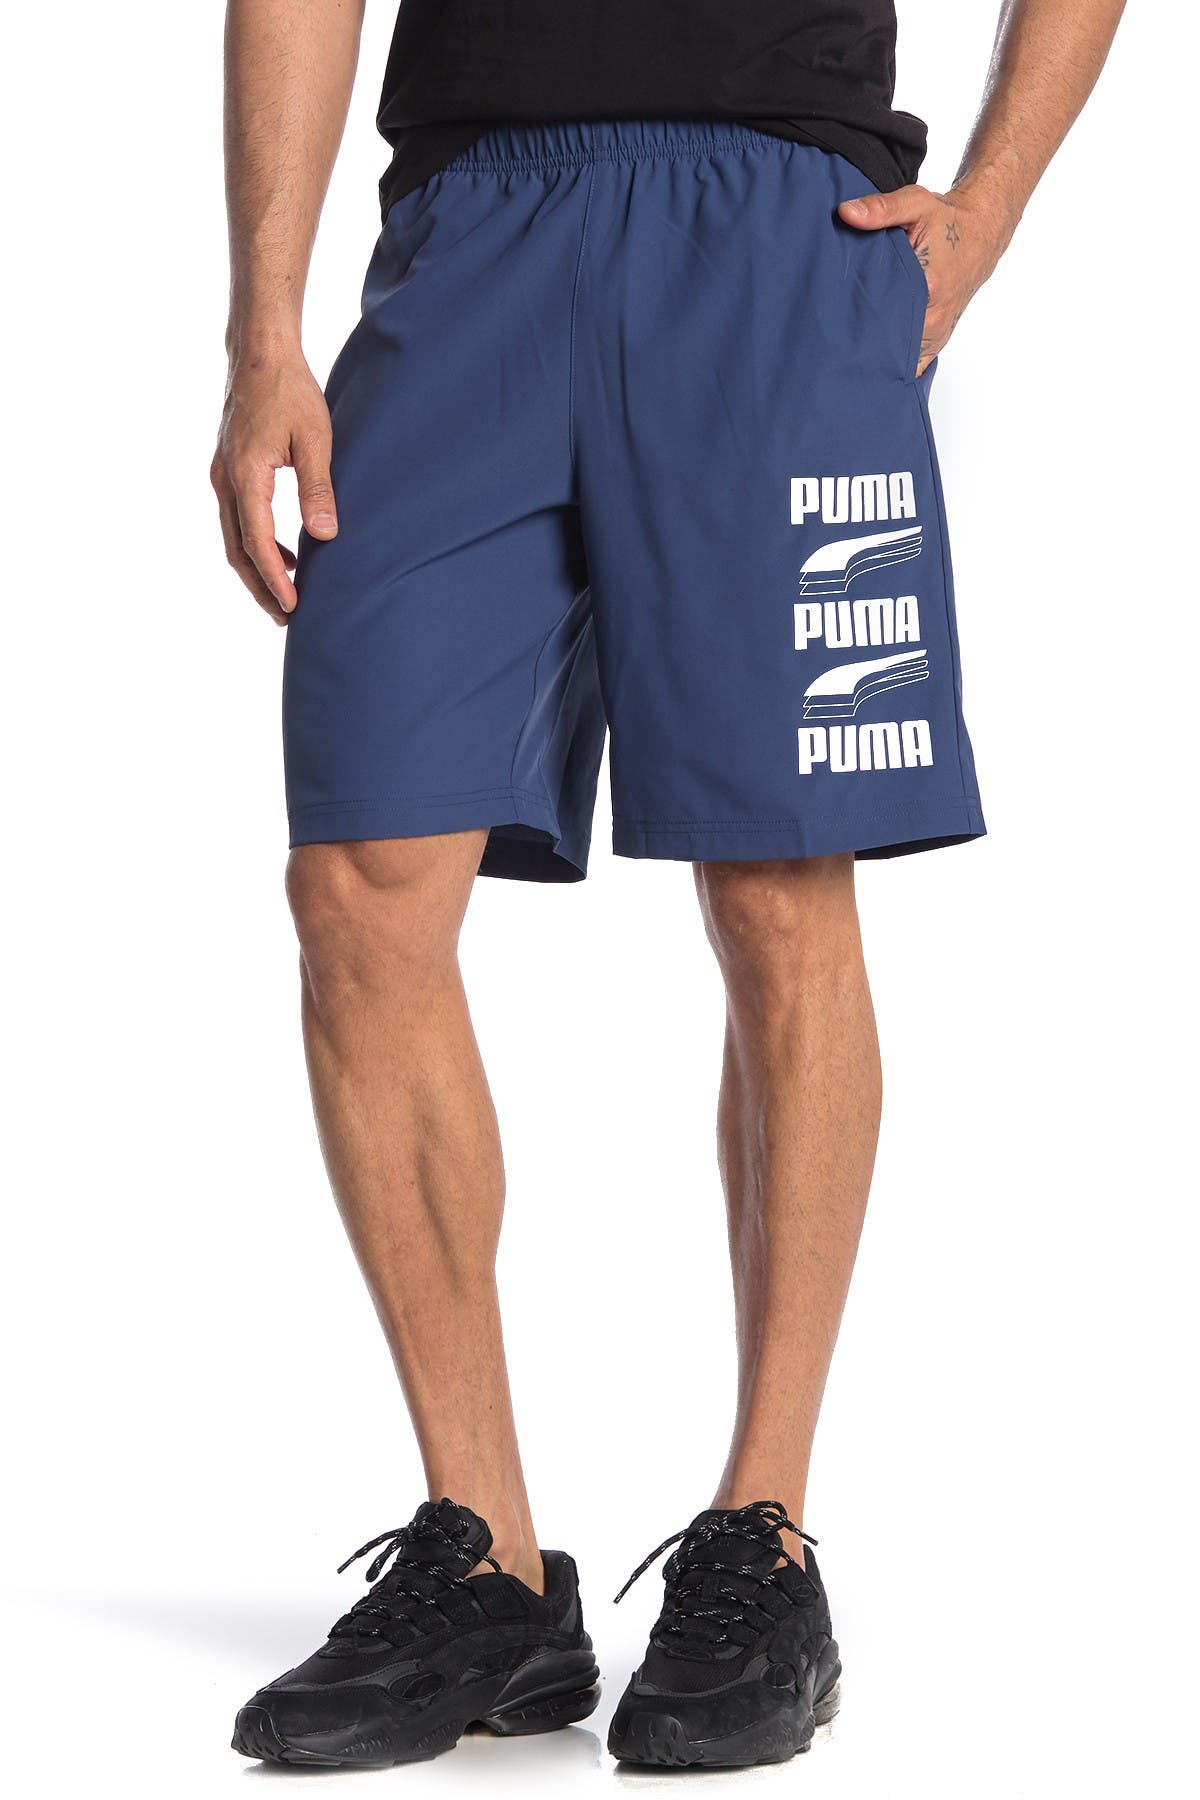 rebel adidas shorts